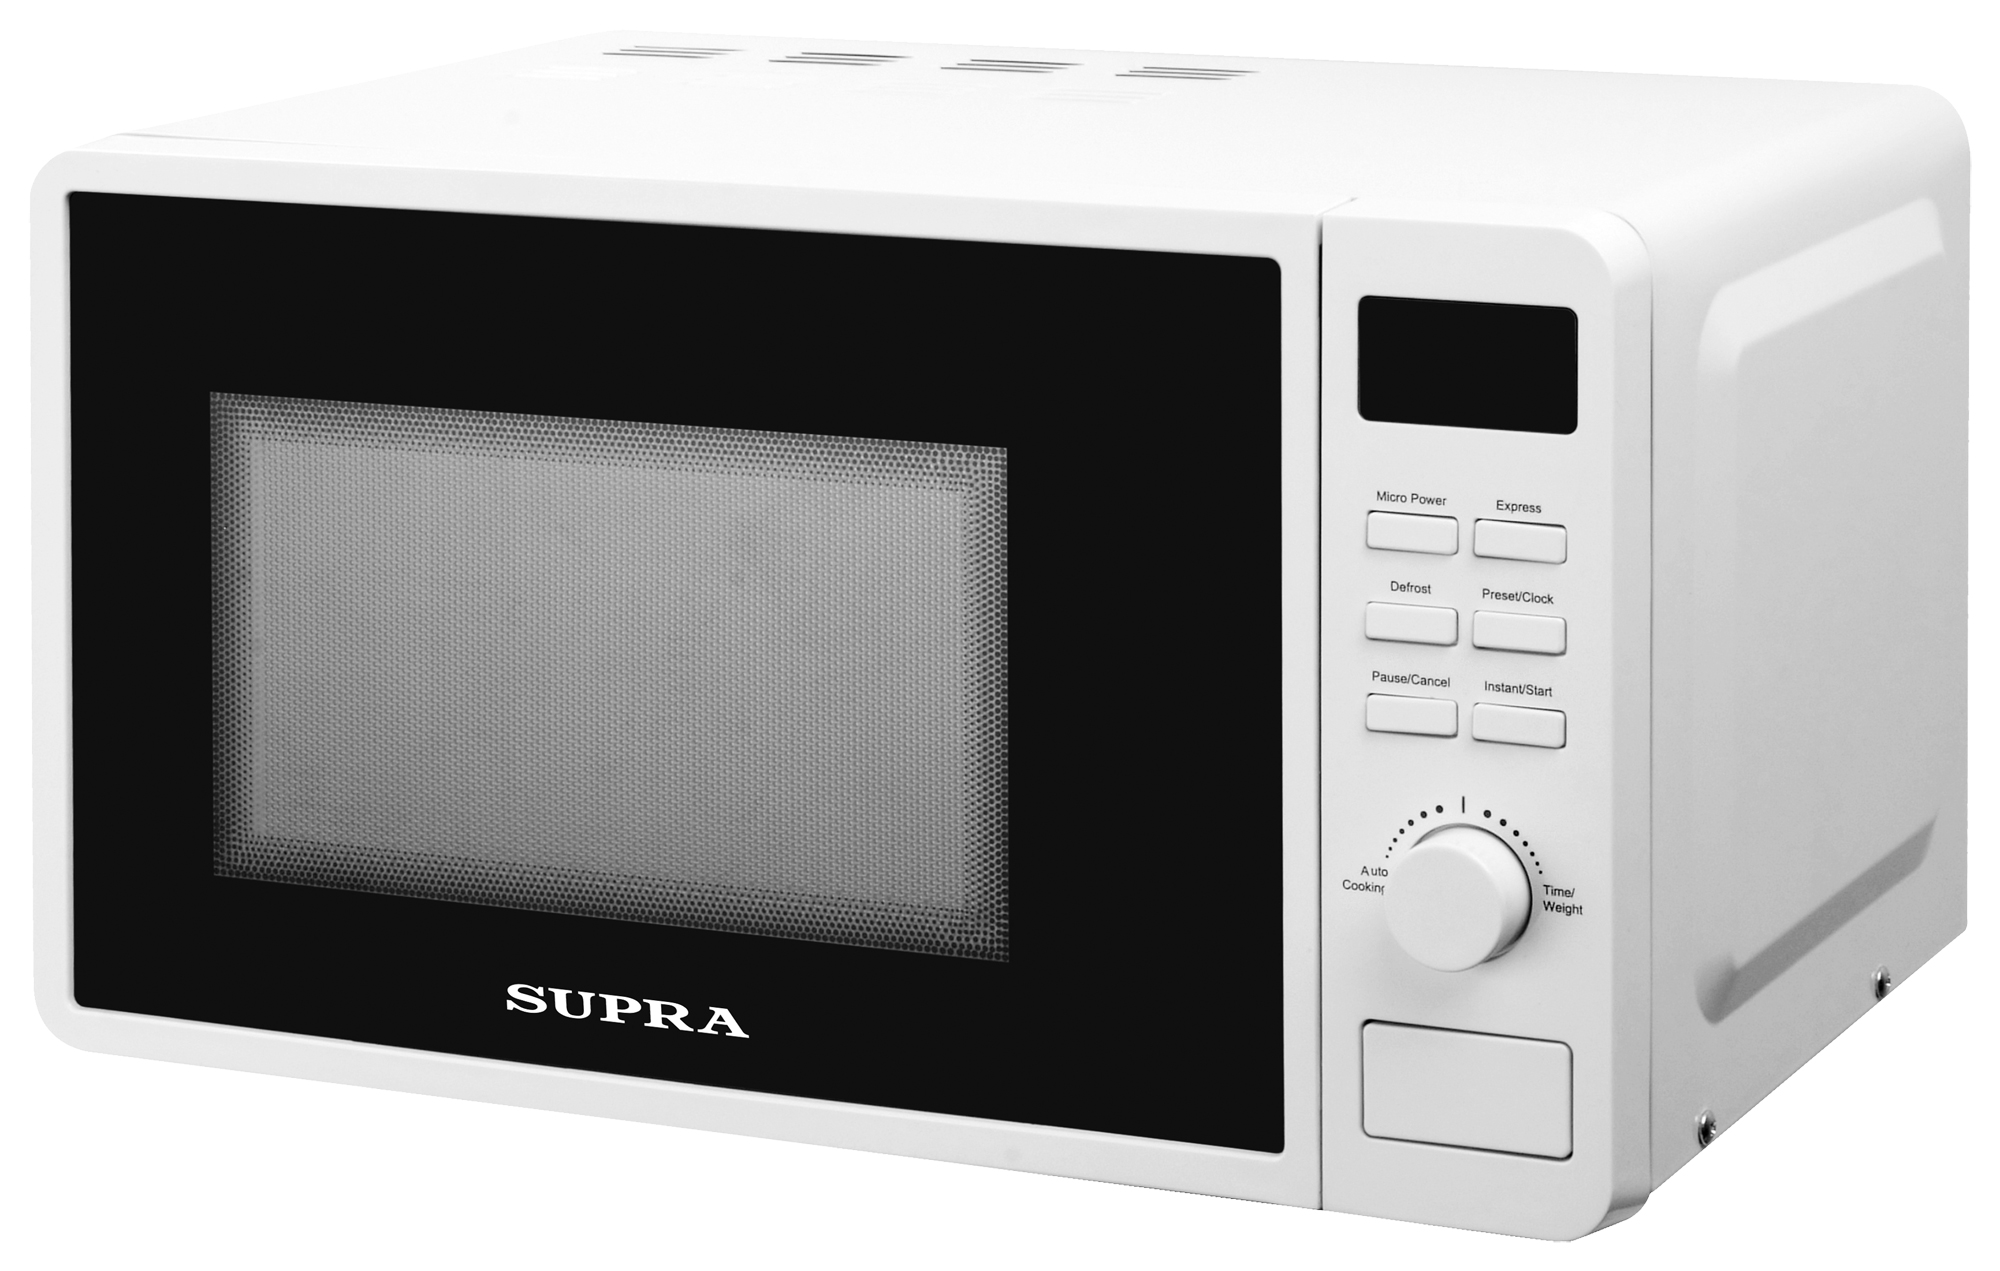 Картинка Микроволновая печь SUPRA 20TW42 по разумной цене купить в интернет магазине mall.su